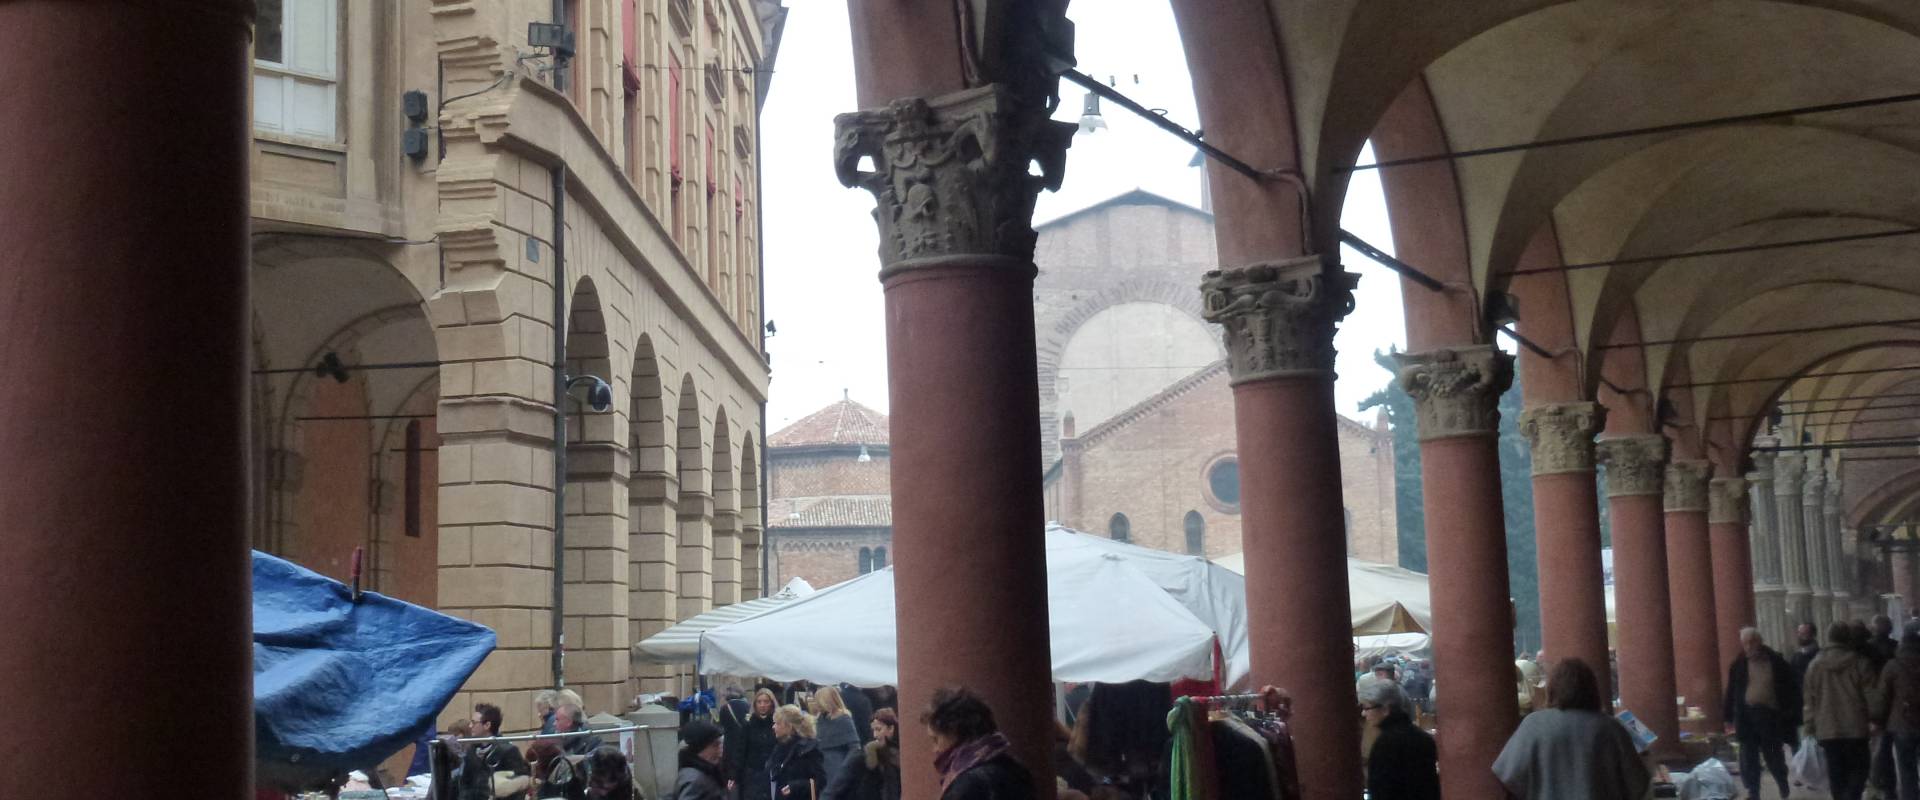 Portico di Via Santo Stefano con il mercato foto di Eliocommons